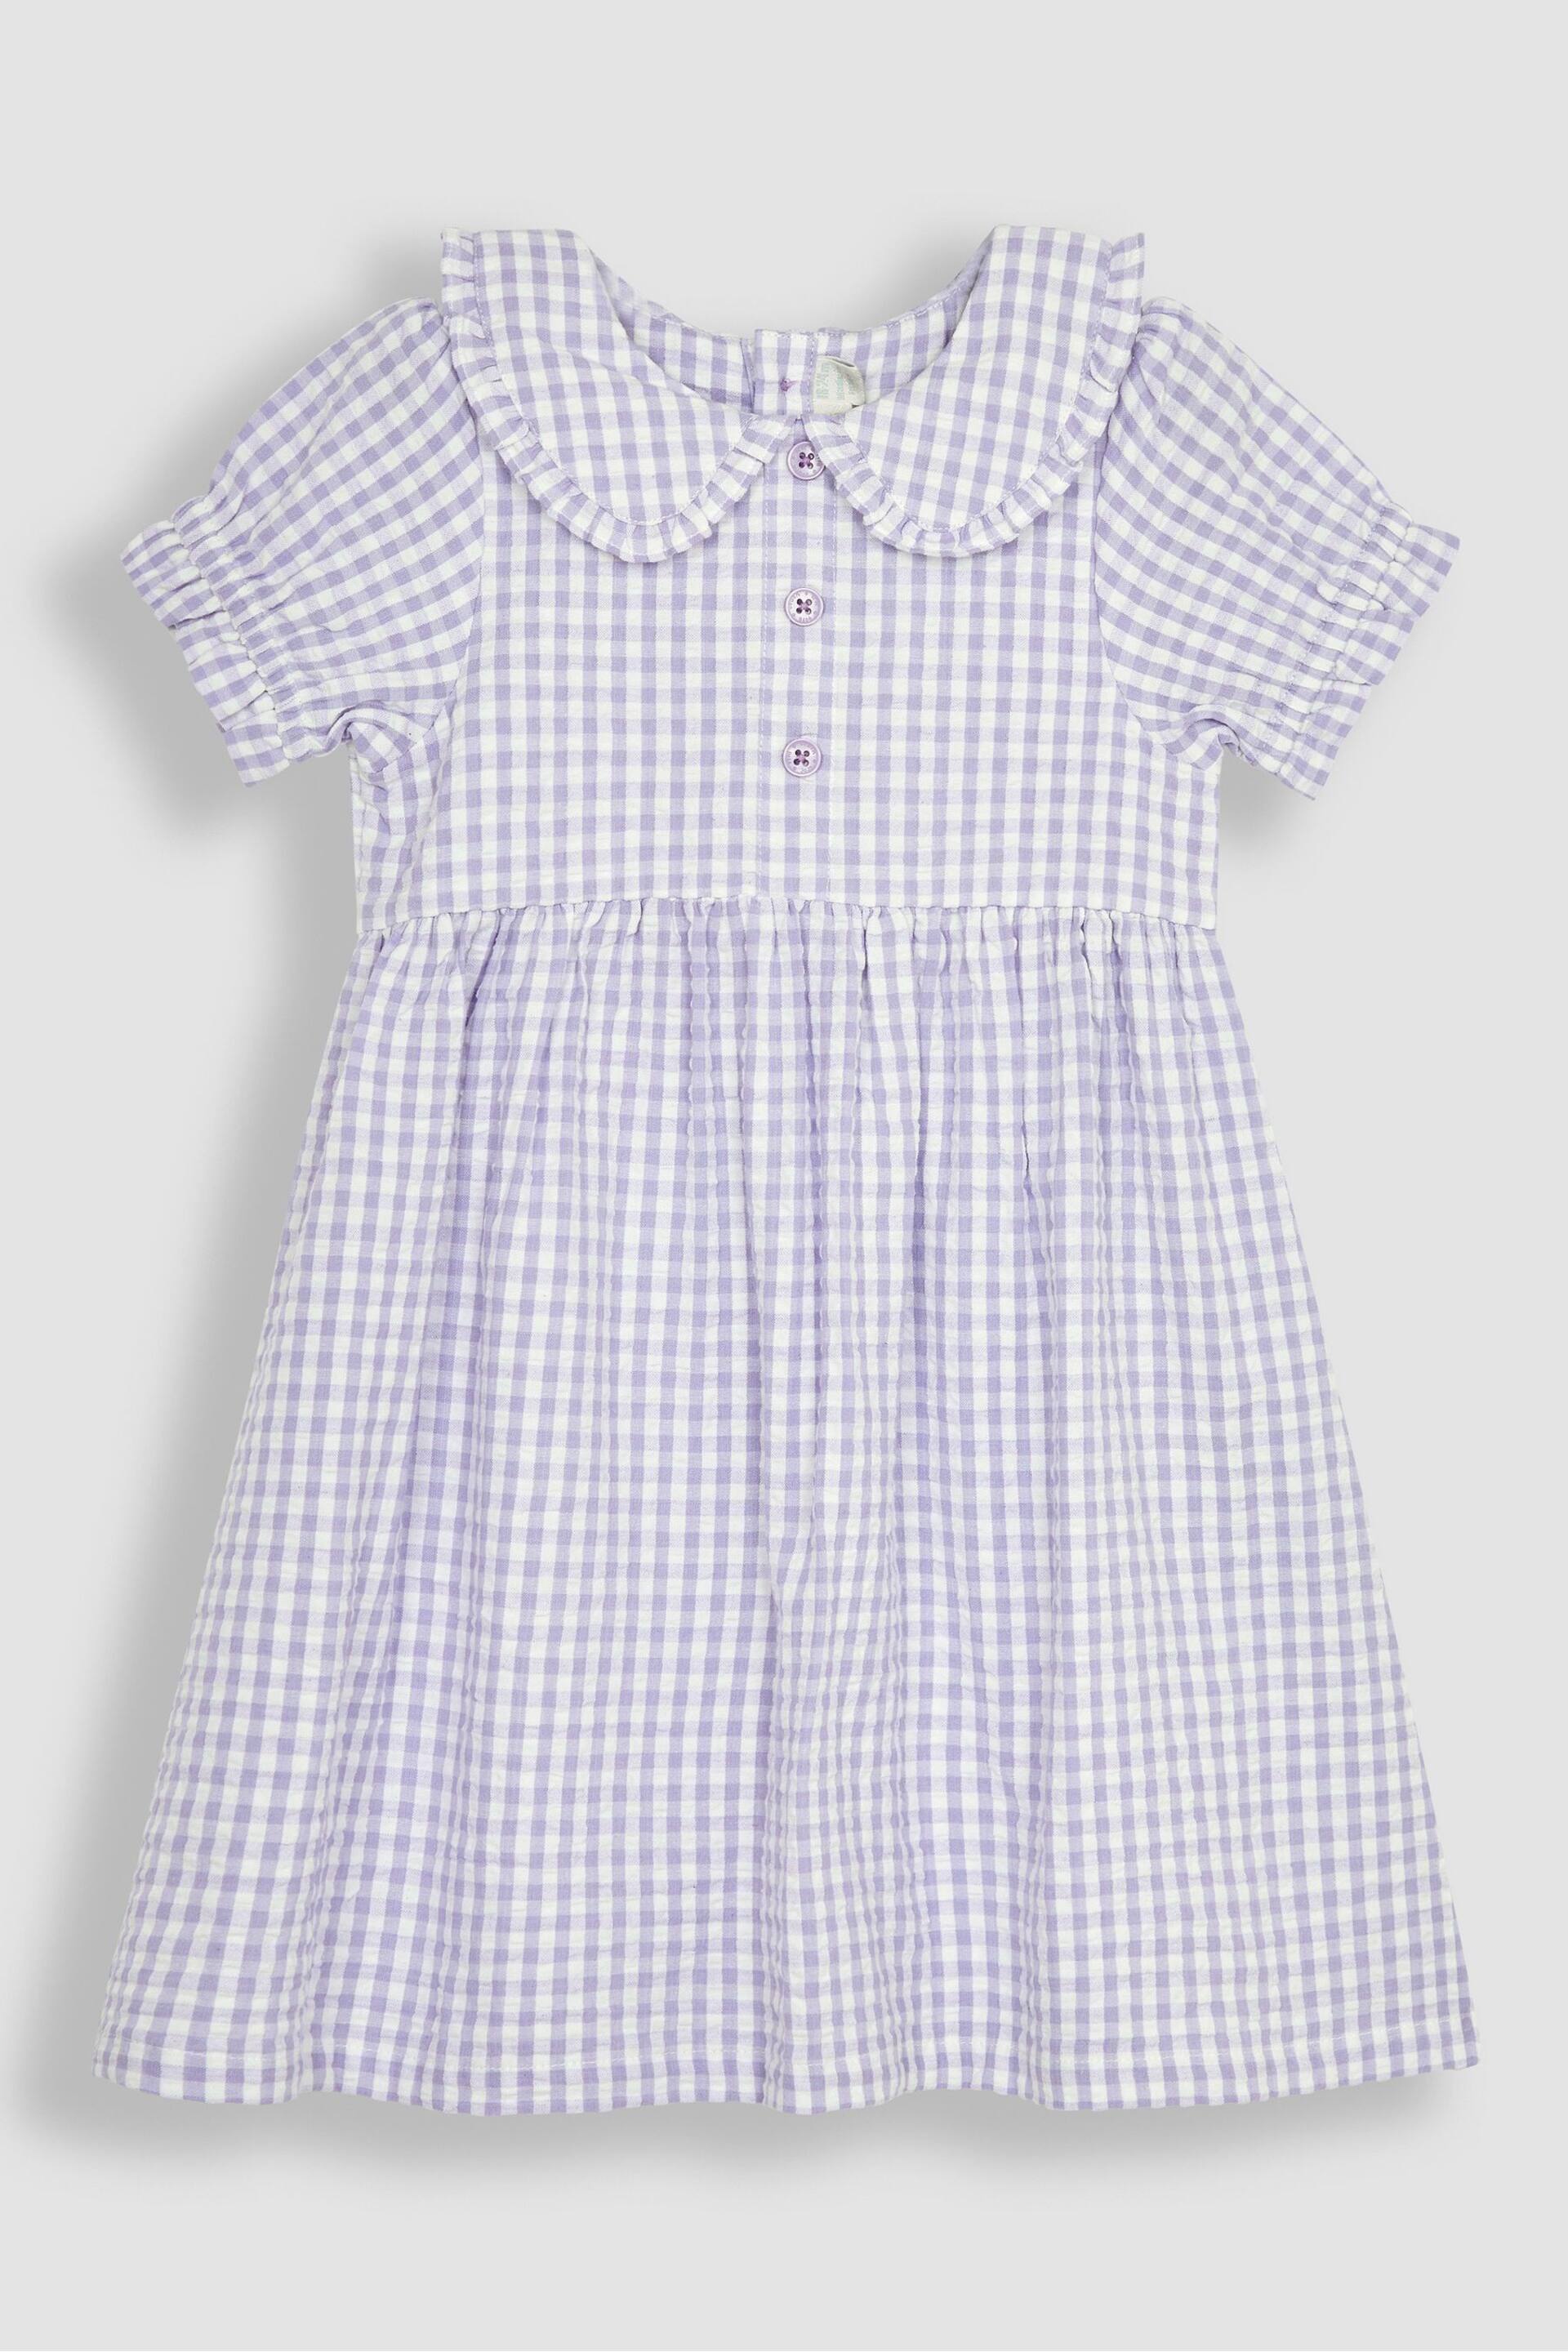 JoJo Maman Bébé Lilac Purple Gingham Button Front Collar Tea Dress - Image 1 of 3